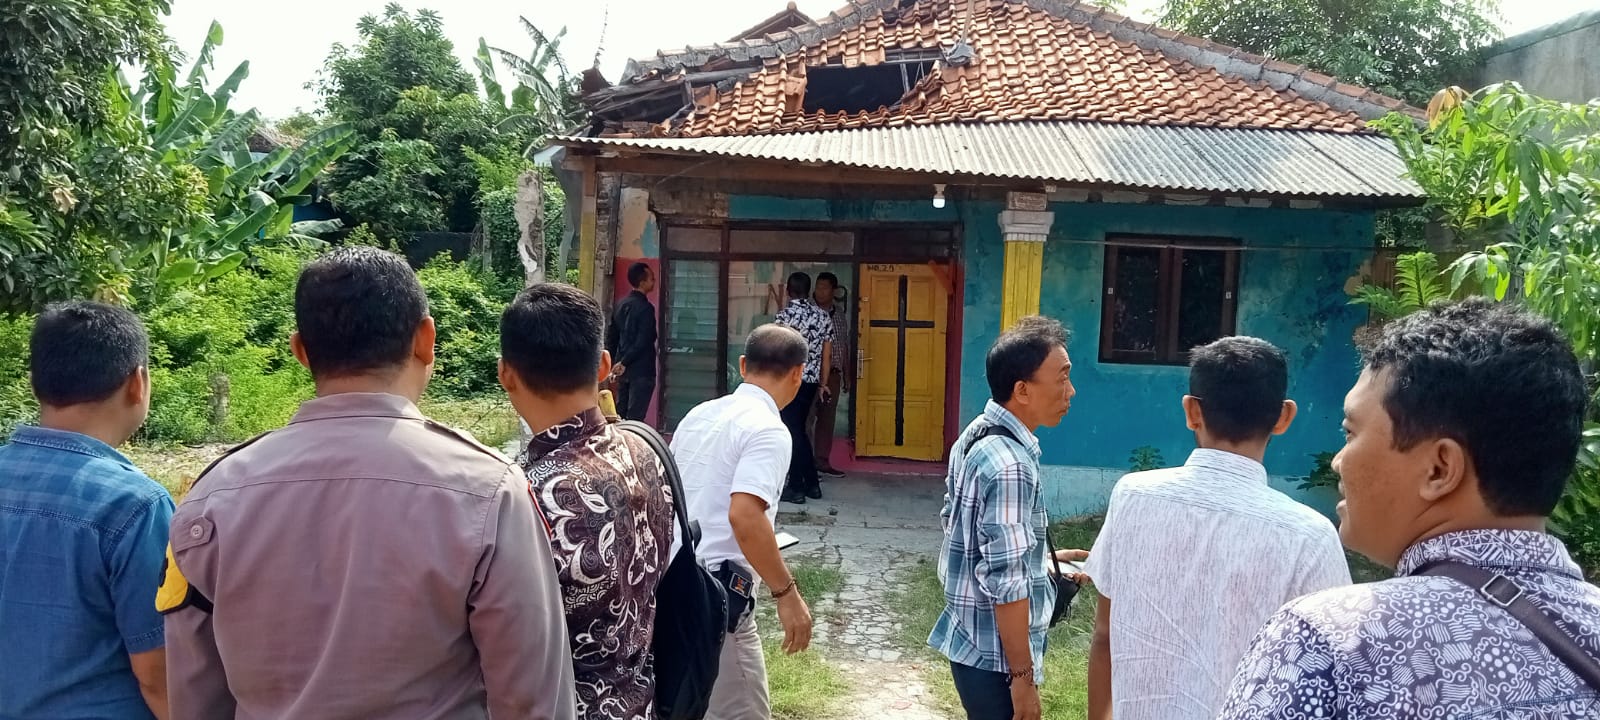 Rumah pelaku penghina Islam saat didatangi oleh pihak kepolisian dan warga.